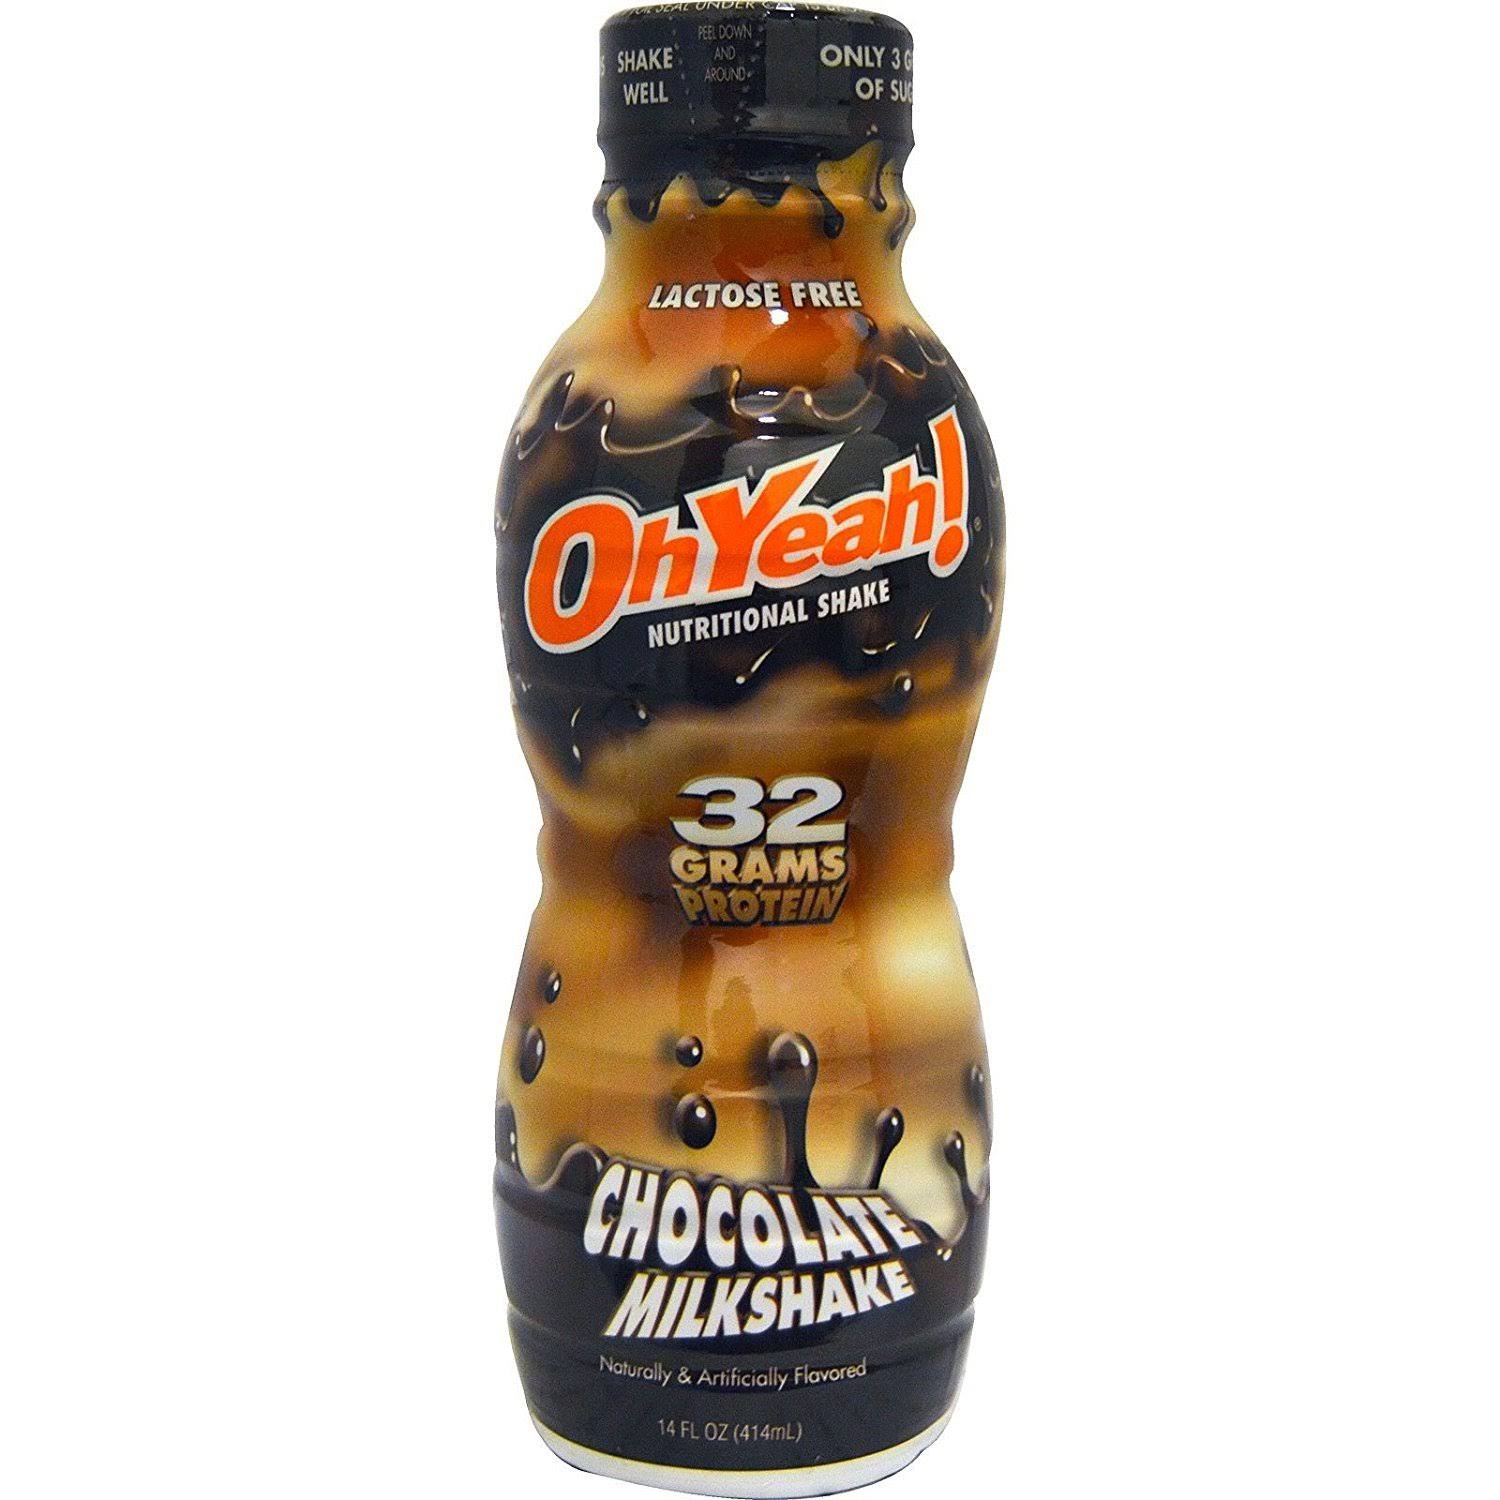 Oh Yeah Nutritional Shake - Chocolate Milkshake, 414ml